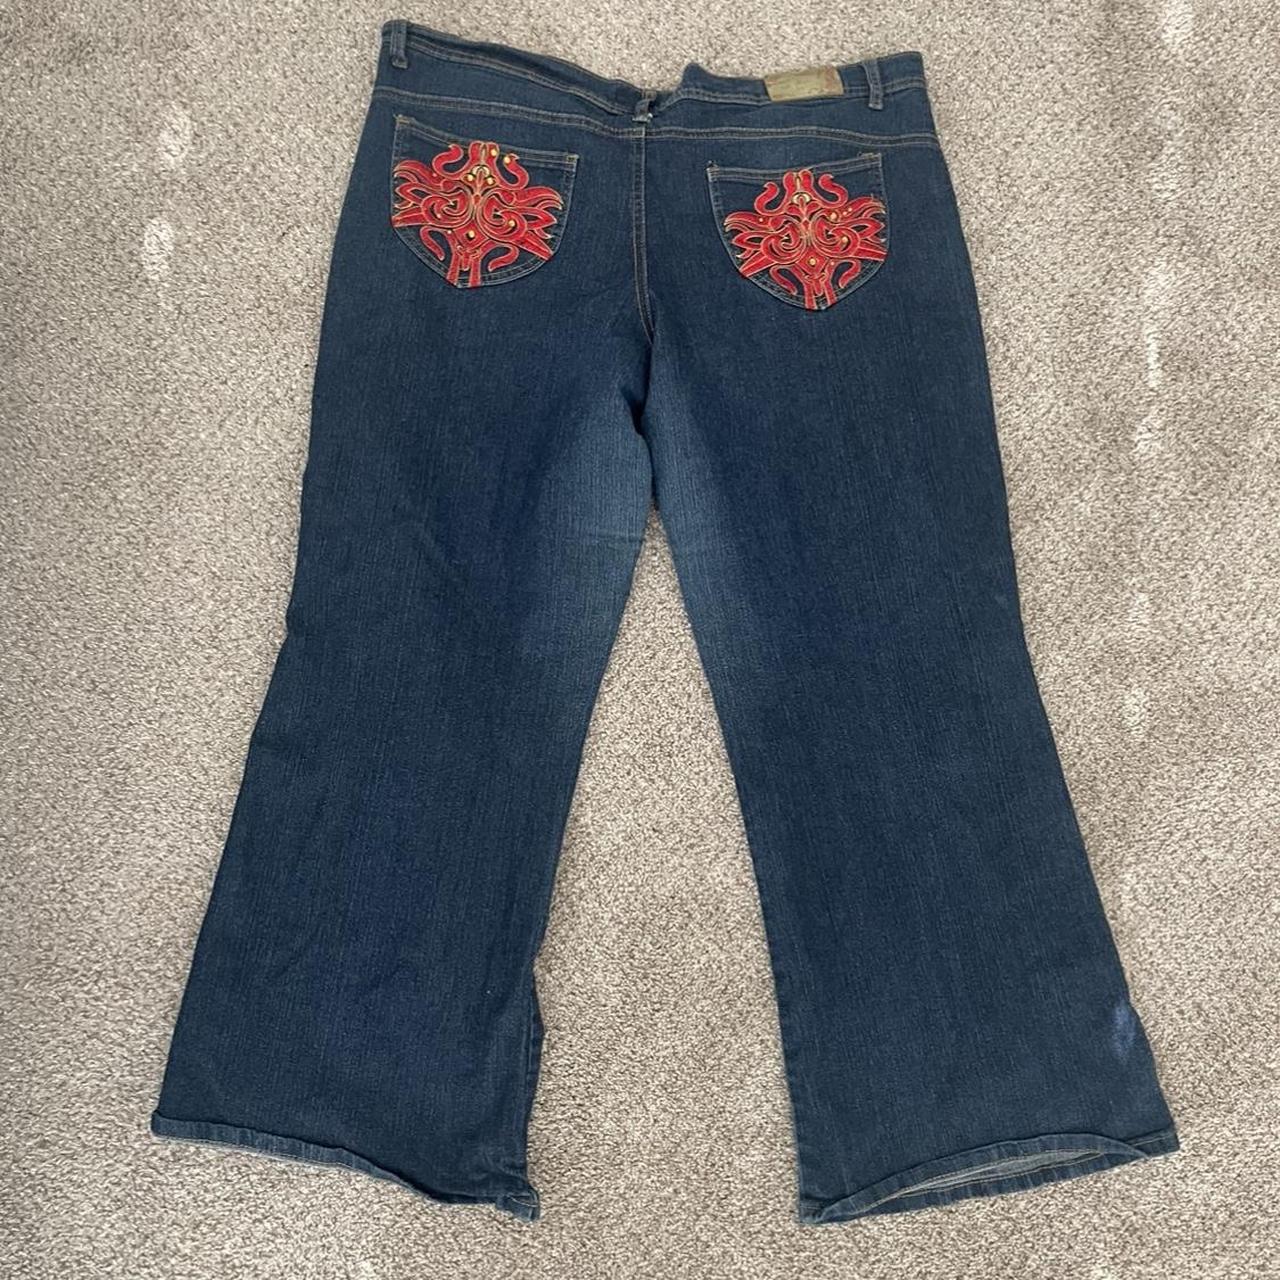 Blue pocket design baggy jeans - Depop